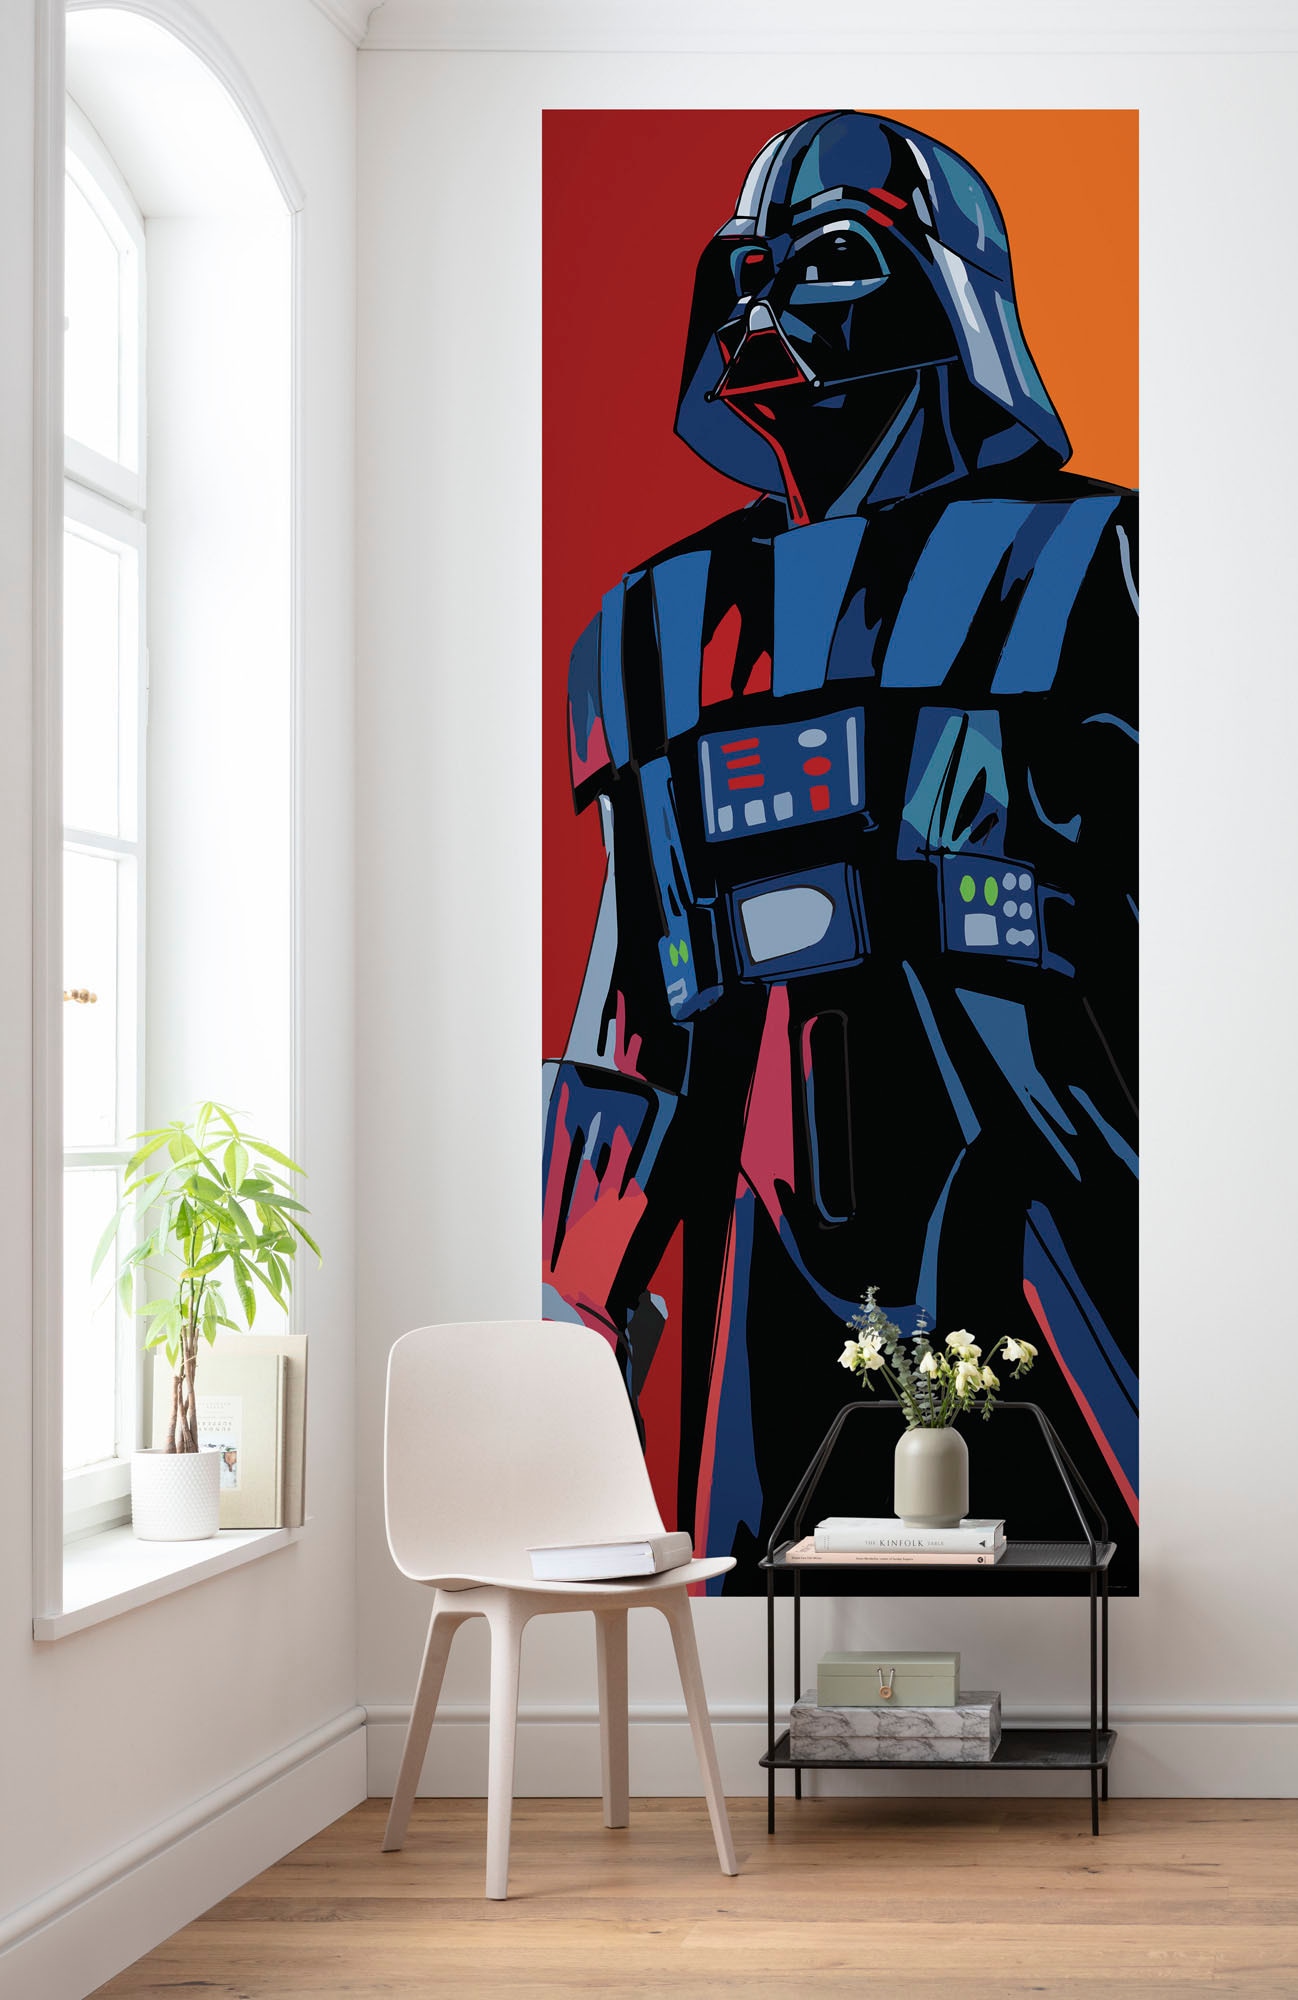 Fototapete »Vlies Fototapete - Cyberart by Vader - Größe 100 x 250 cm«, bedruckt